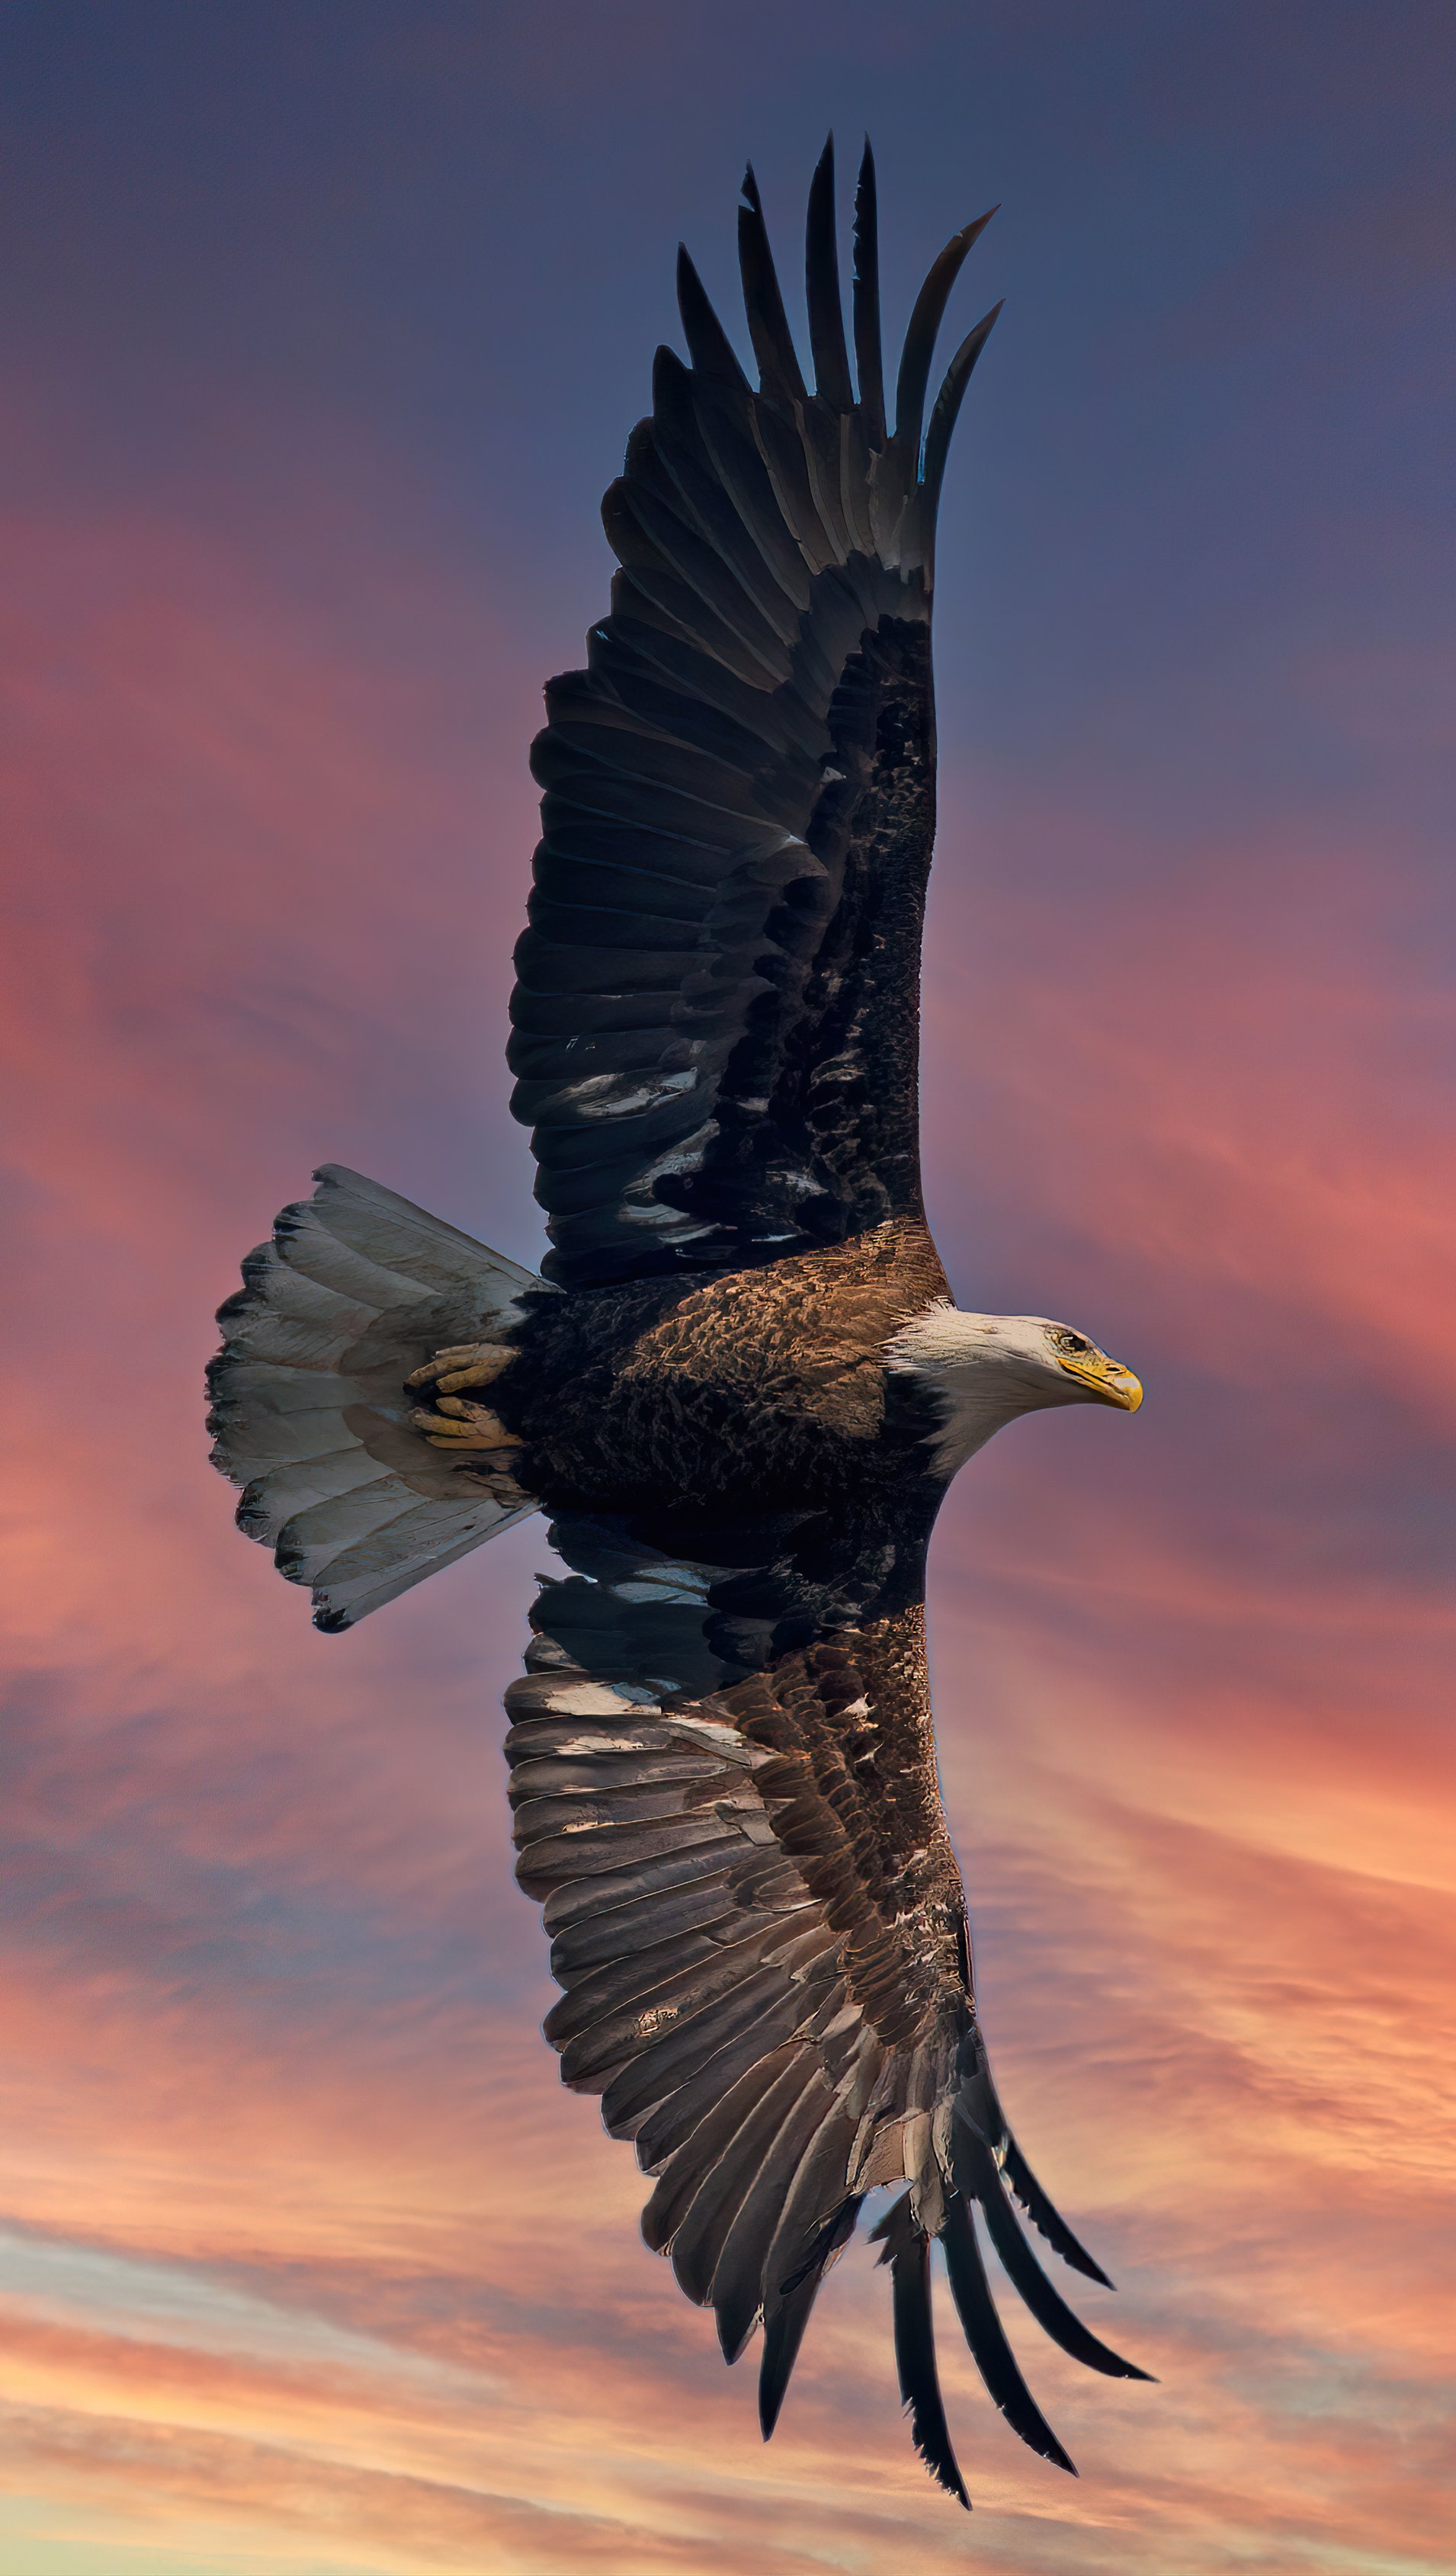 Fondos de pantalla Águila calva con alas abiertas Vertical